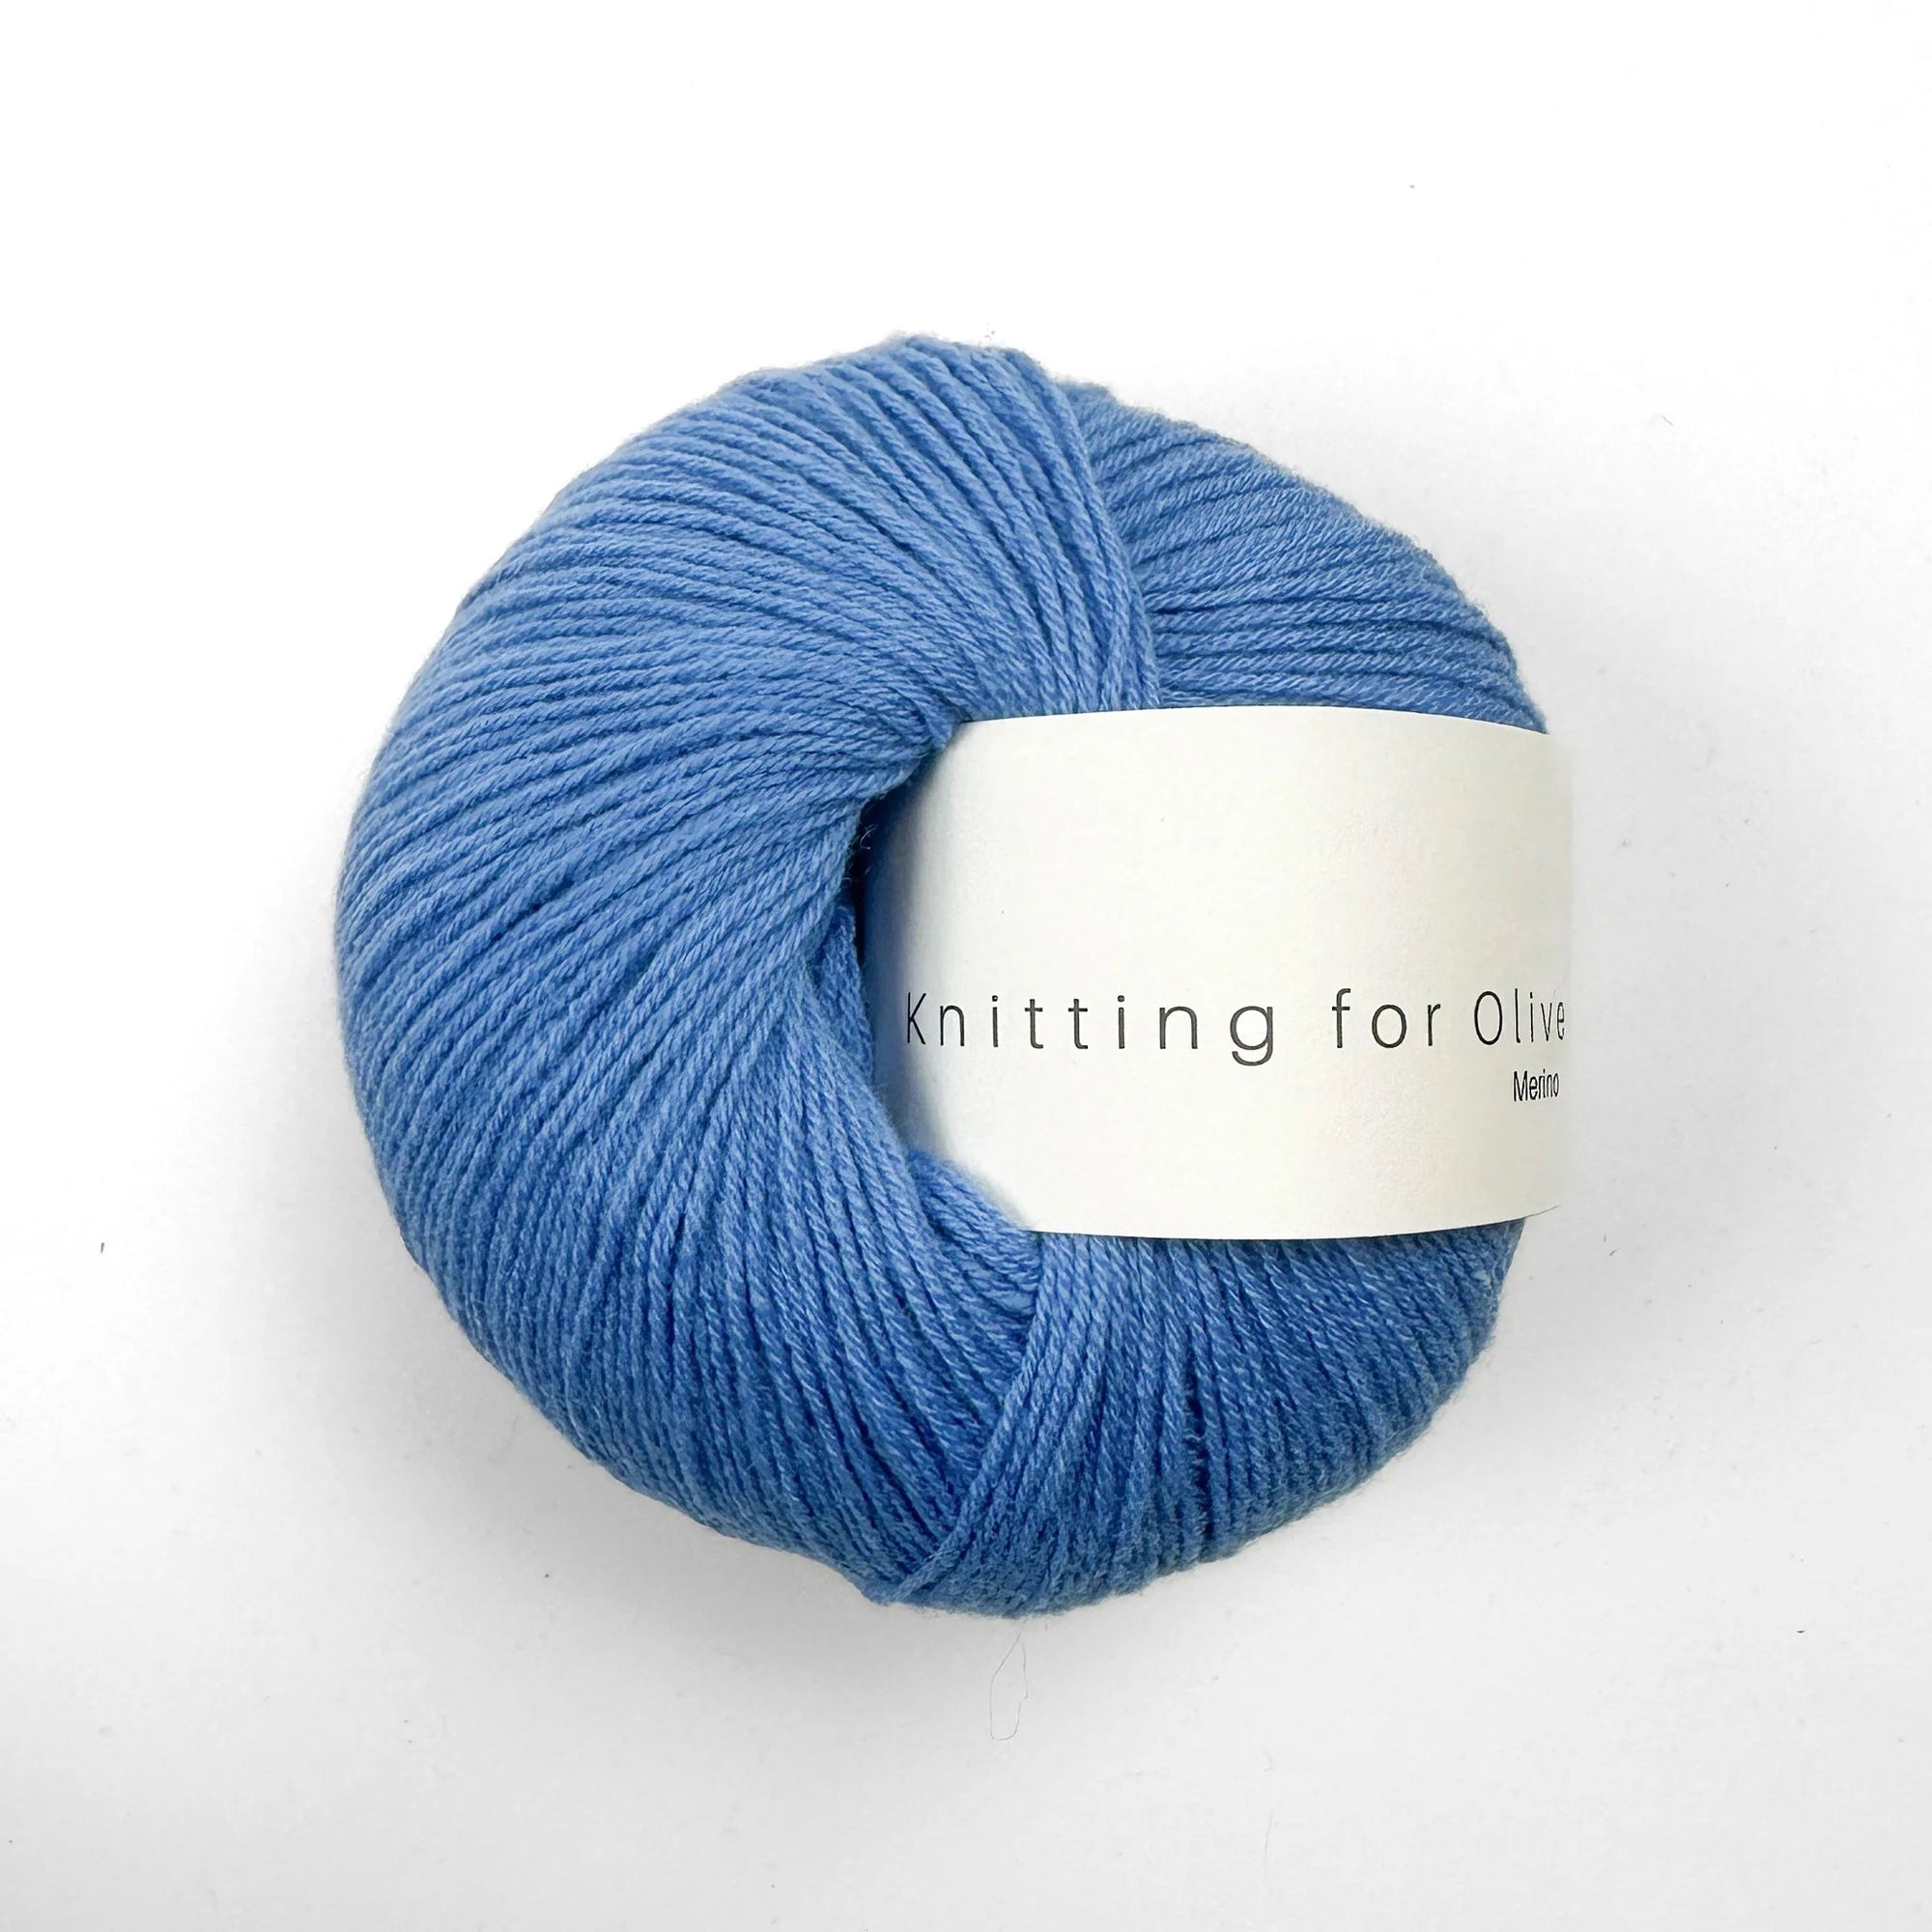 Knitting for Olive Merino - Knitting for Olive - Poppy Blue - The Little Yarn Store